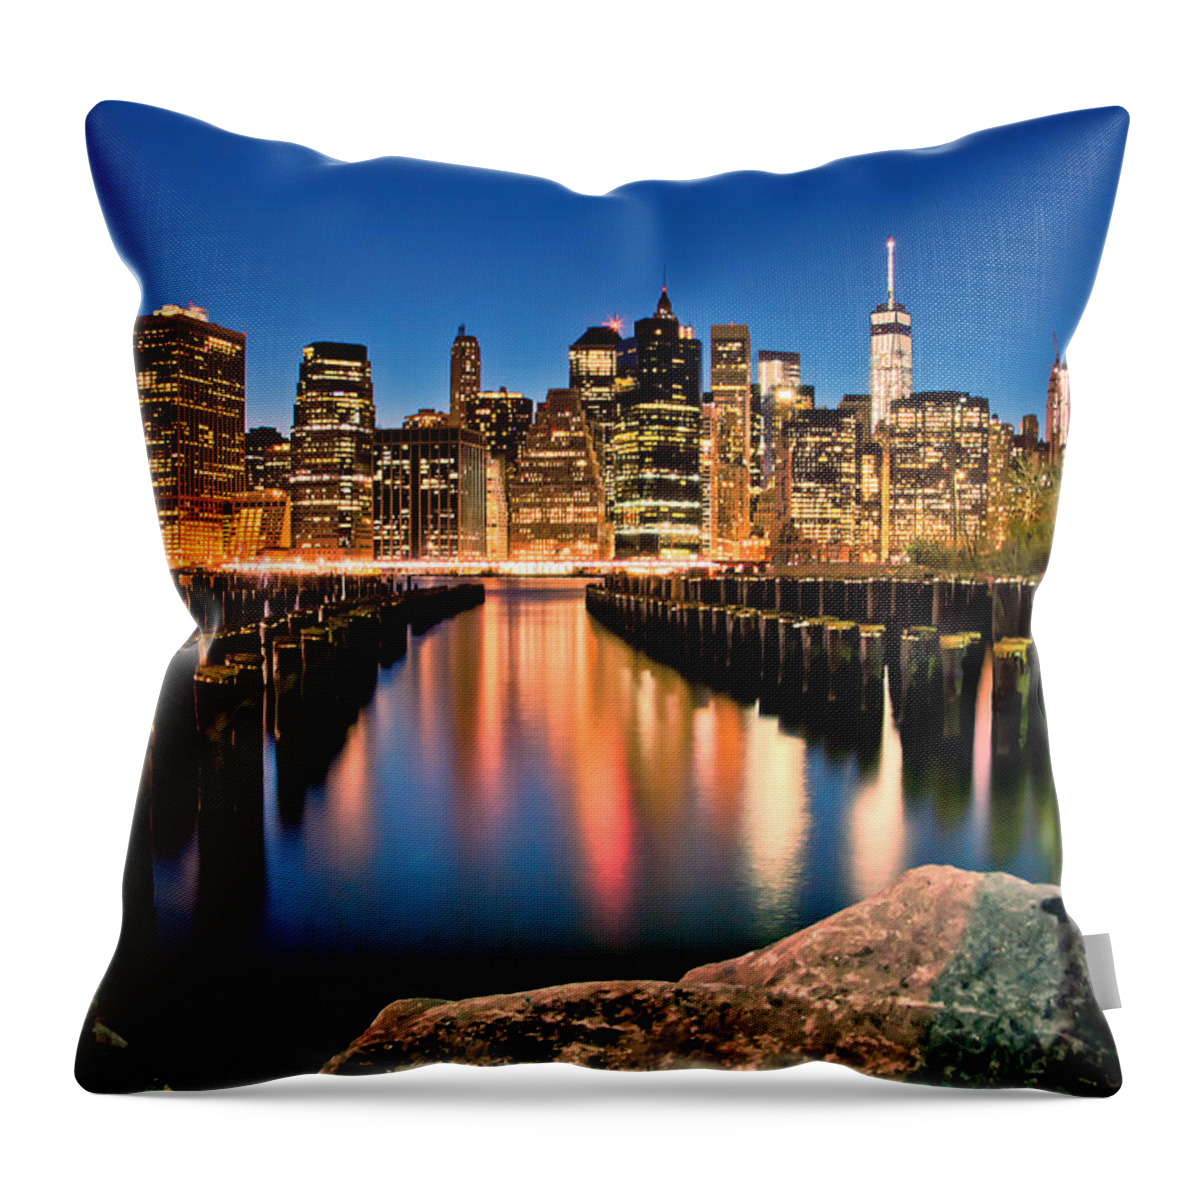 New York City Skyline Throw Pillow featuring the photograph Manhattan Skyline At Dusk by Az Jackson